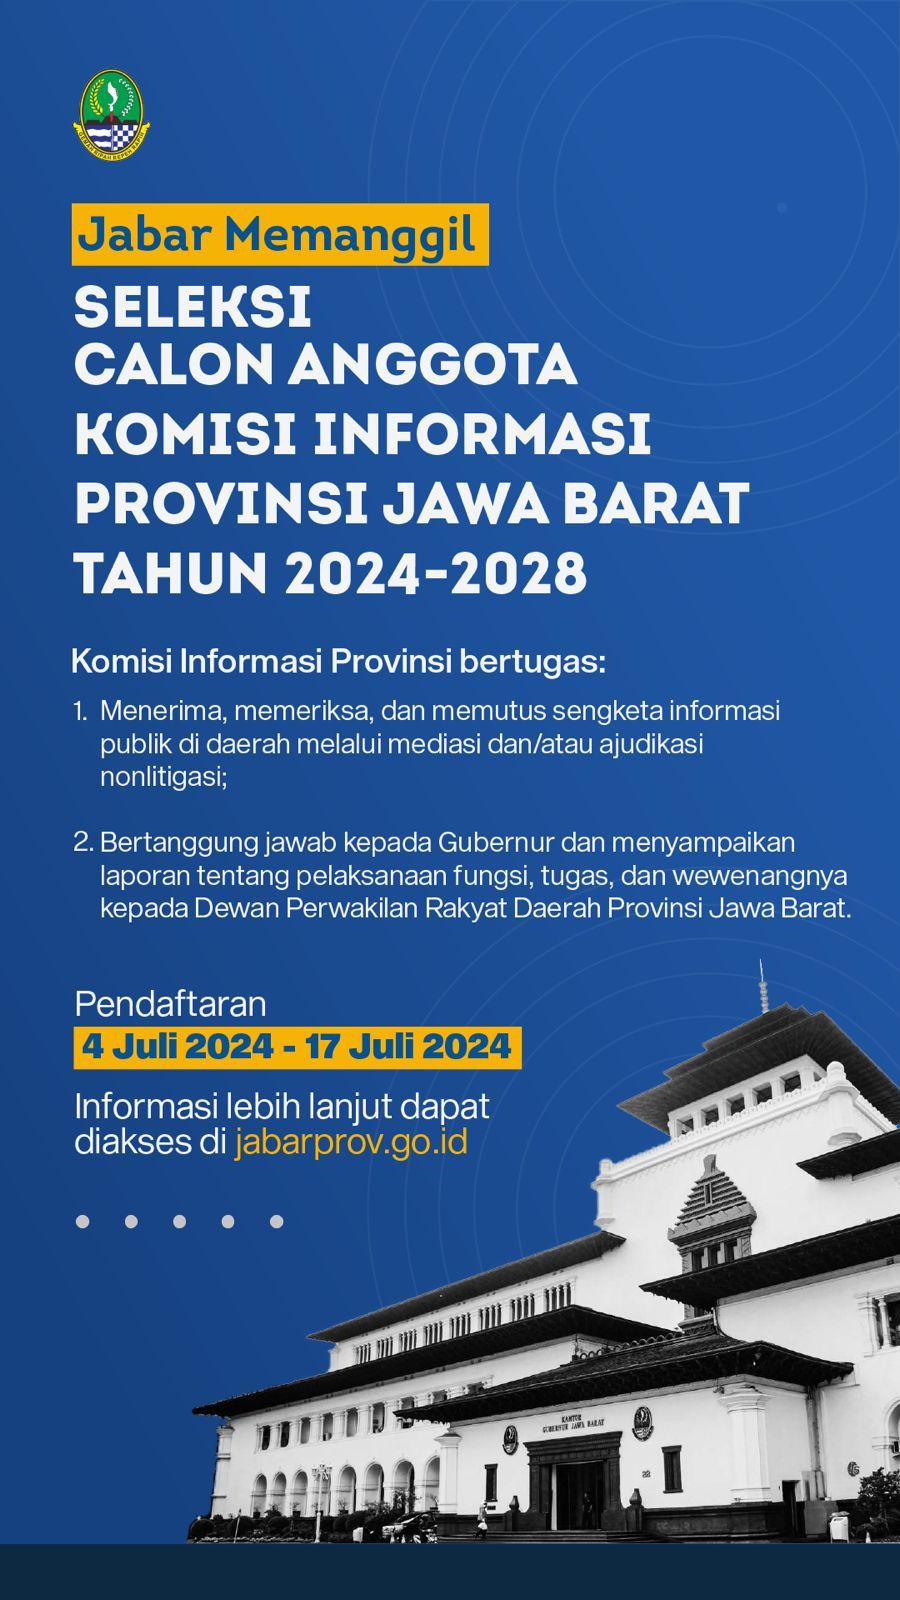 Pemprov Jabar Gelar Seleksi Anggota Komisi Informasi Tahun 2024-2028